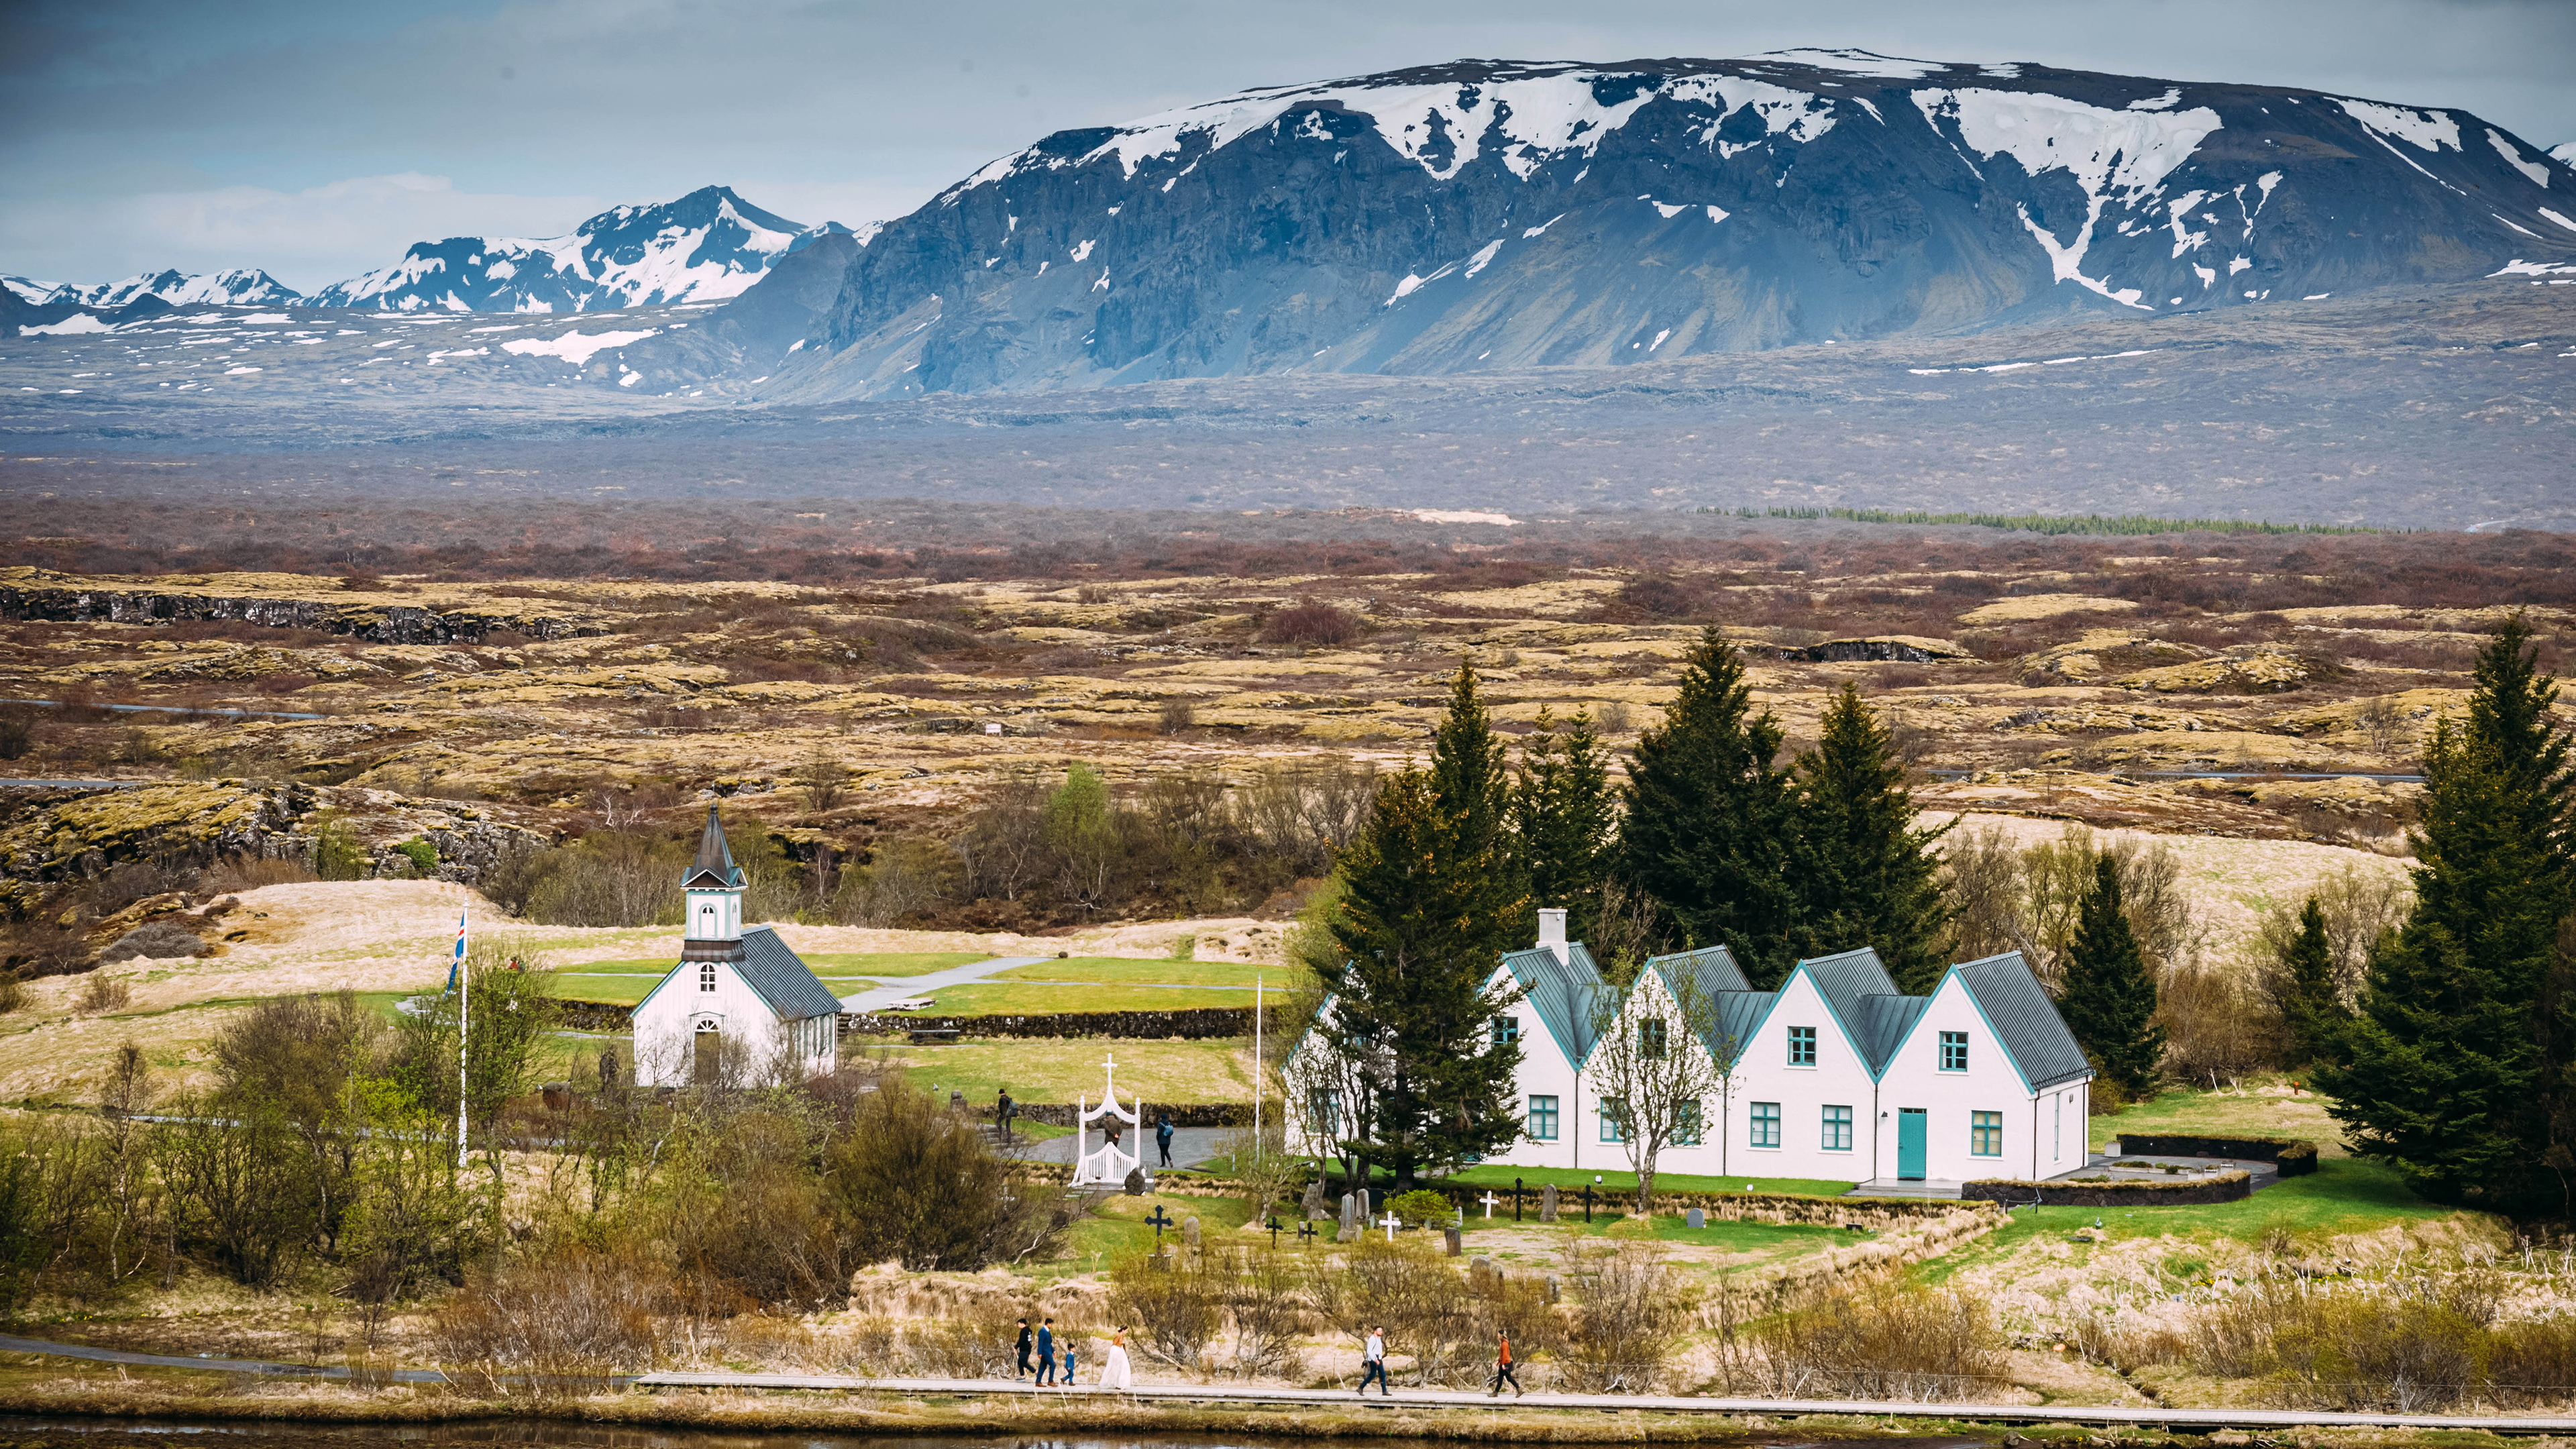 Thingvellir Kirche Island; 
Kirche und 5 weiße Häuser mit grünem Dach, die aneinandergereiht sind
Im Hintergrund kahle und karge Ebene, dahinter Berge leicht mit Schnee bedeckt